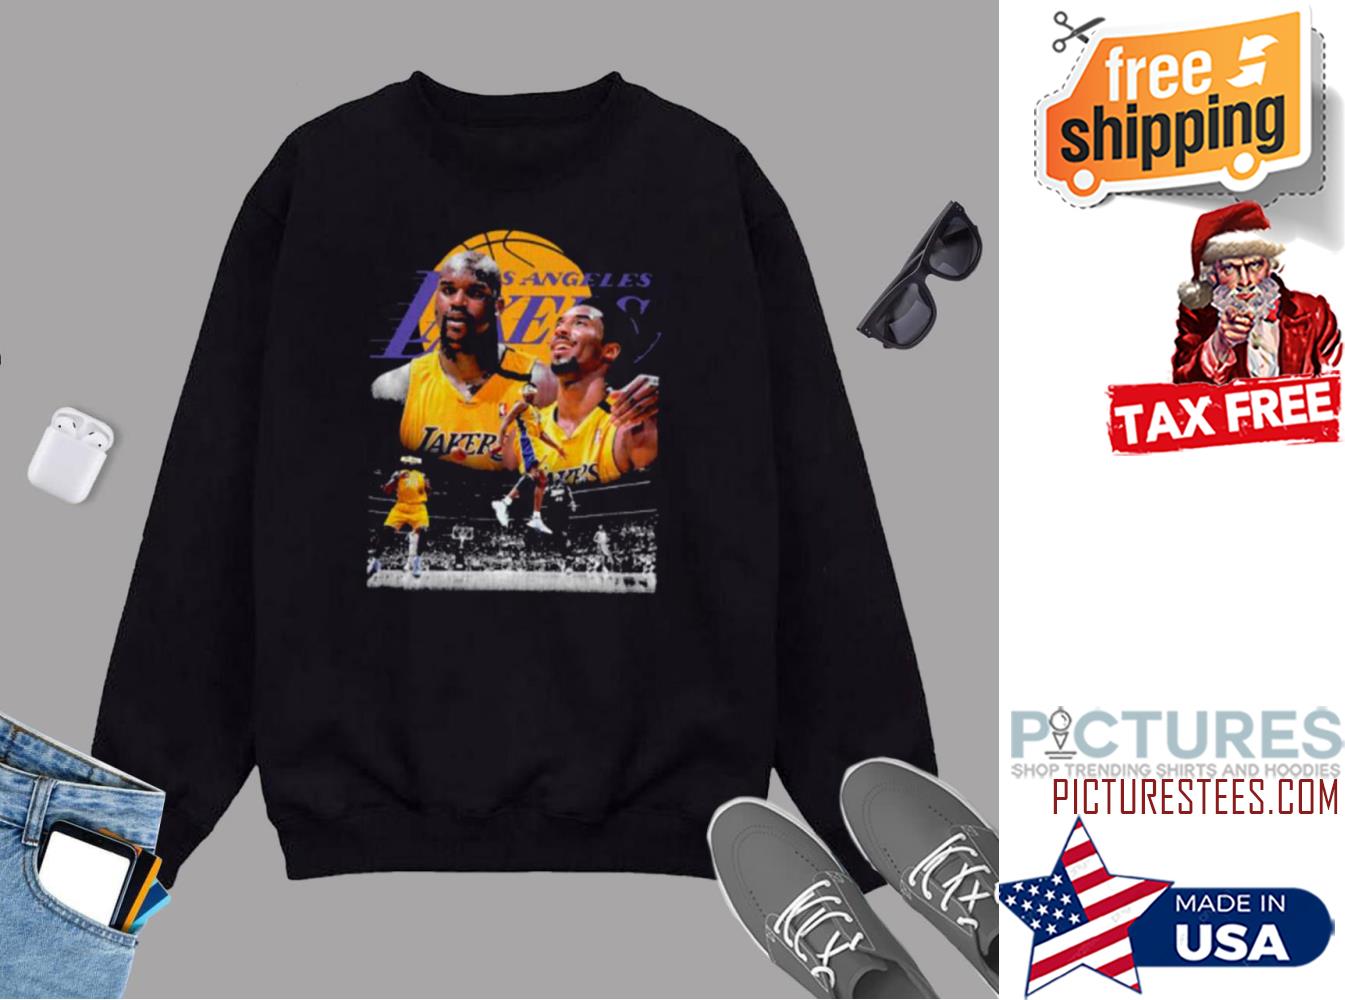 Los Angeles Lakers Hoodie  Hoodies, Shop sweatshirts, Lakers